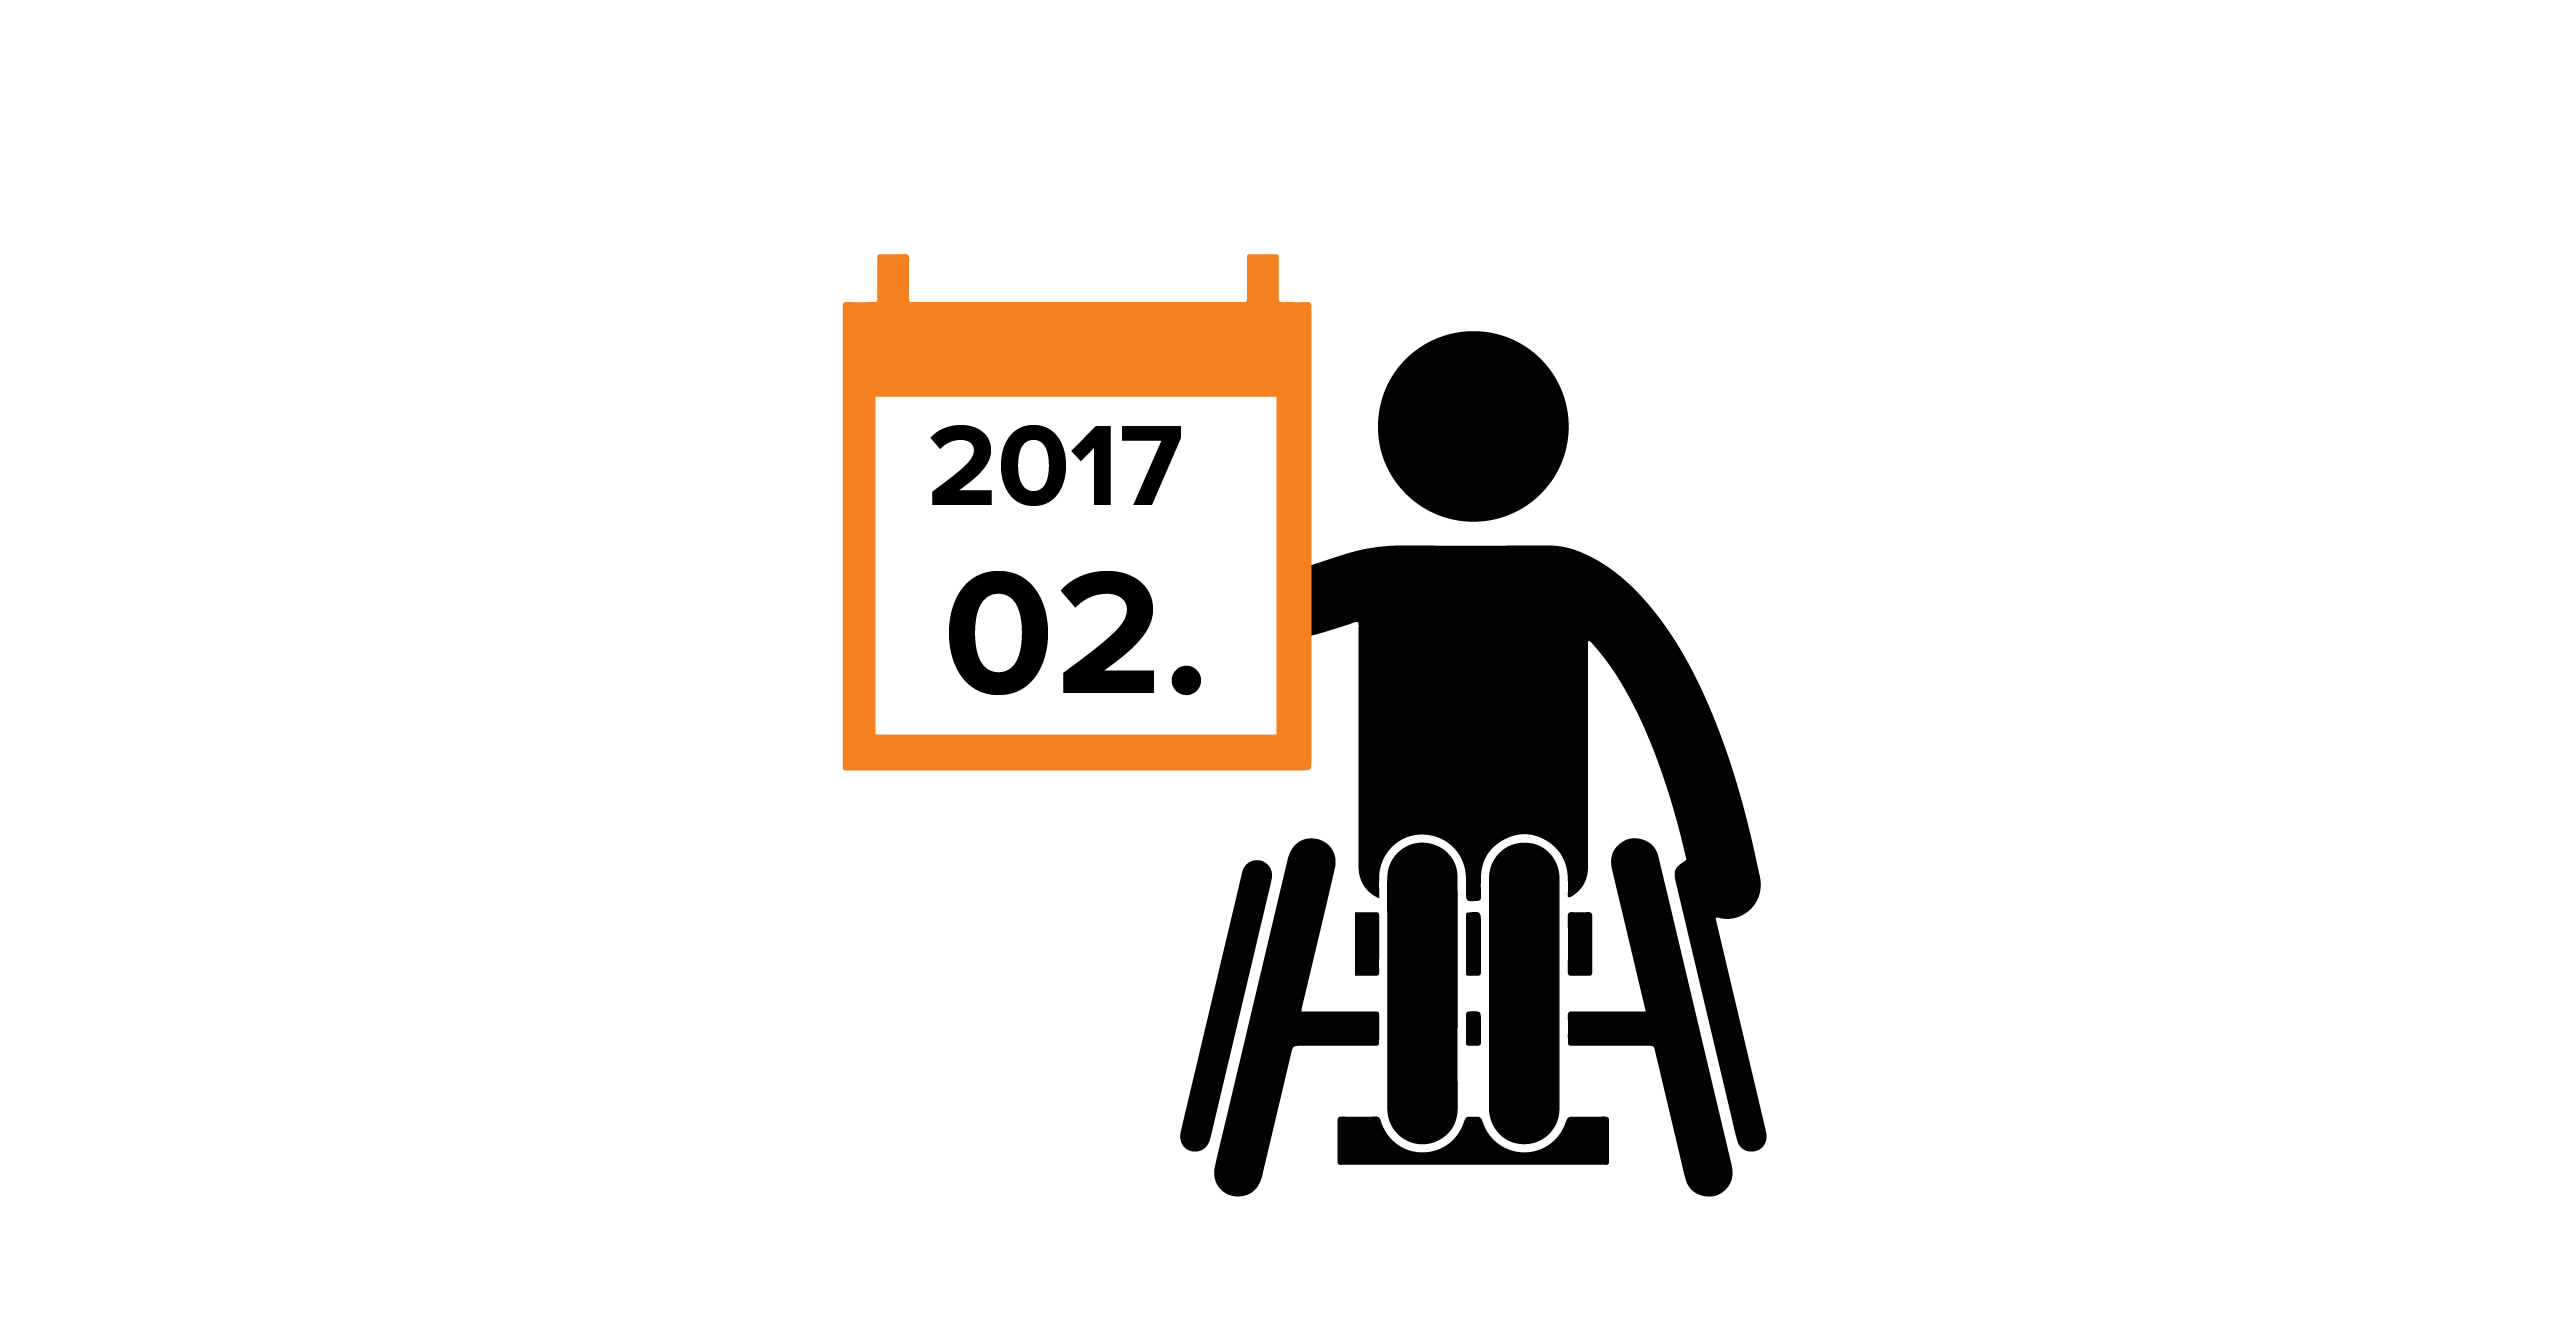 Na grafice człowiek na wózku, trzymający kalendarz z datą 02.2017